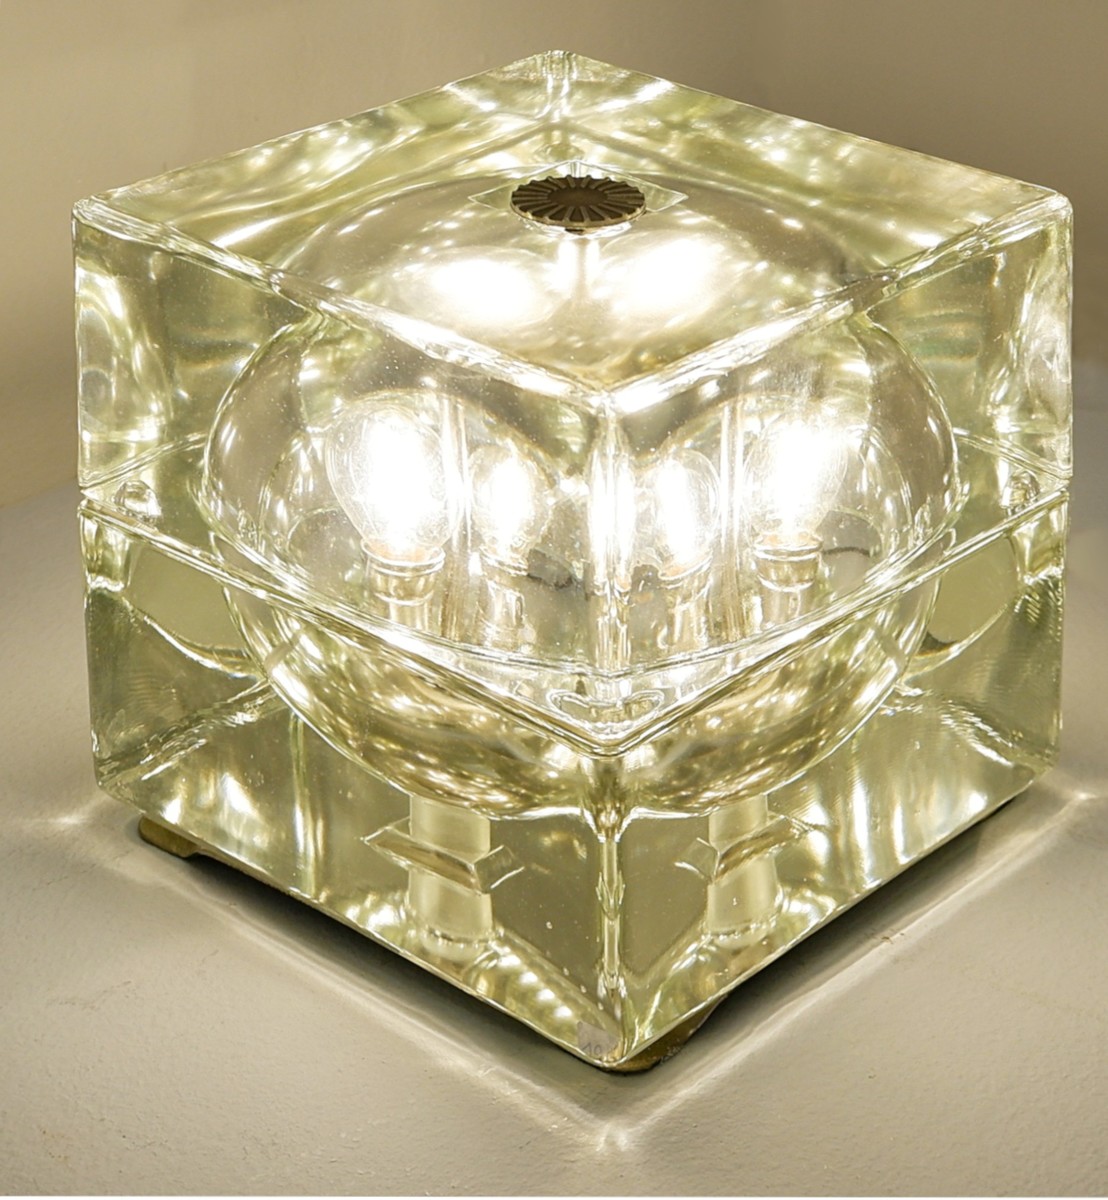 pair-of-greenish-table-lamp-cubosfera-alessandro-mendini-1968-3107530-en-max.jpg